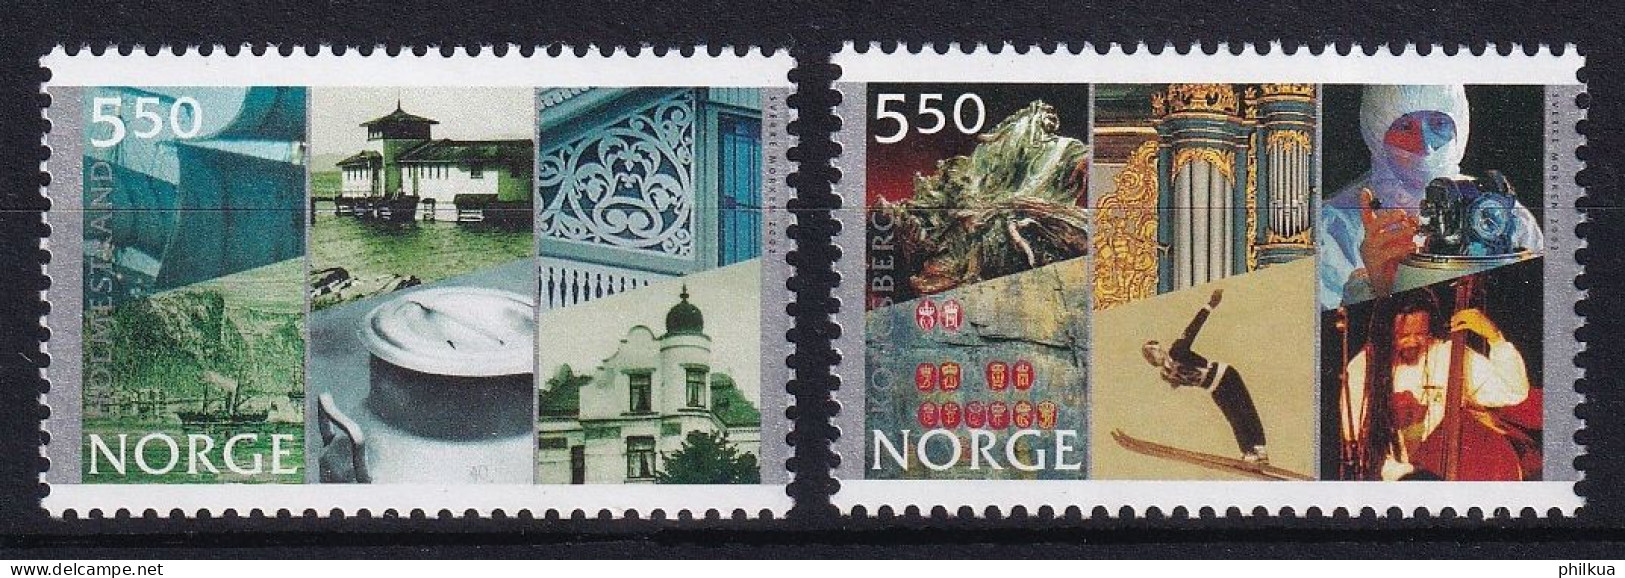 MiNr. 1436 - 1437 Norwegen 2002, 5. Juni. 250 Jahre Stadt Holmestrand, 200 Jahre Stadt Kongsberg - Postfrisch/**/MNH - Unused Stamps